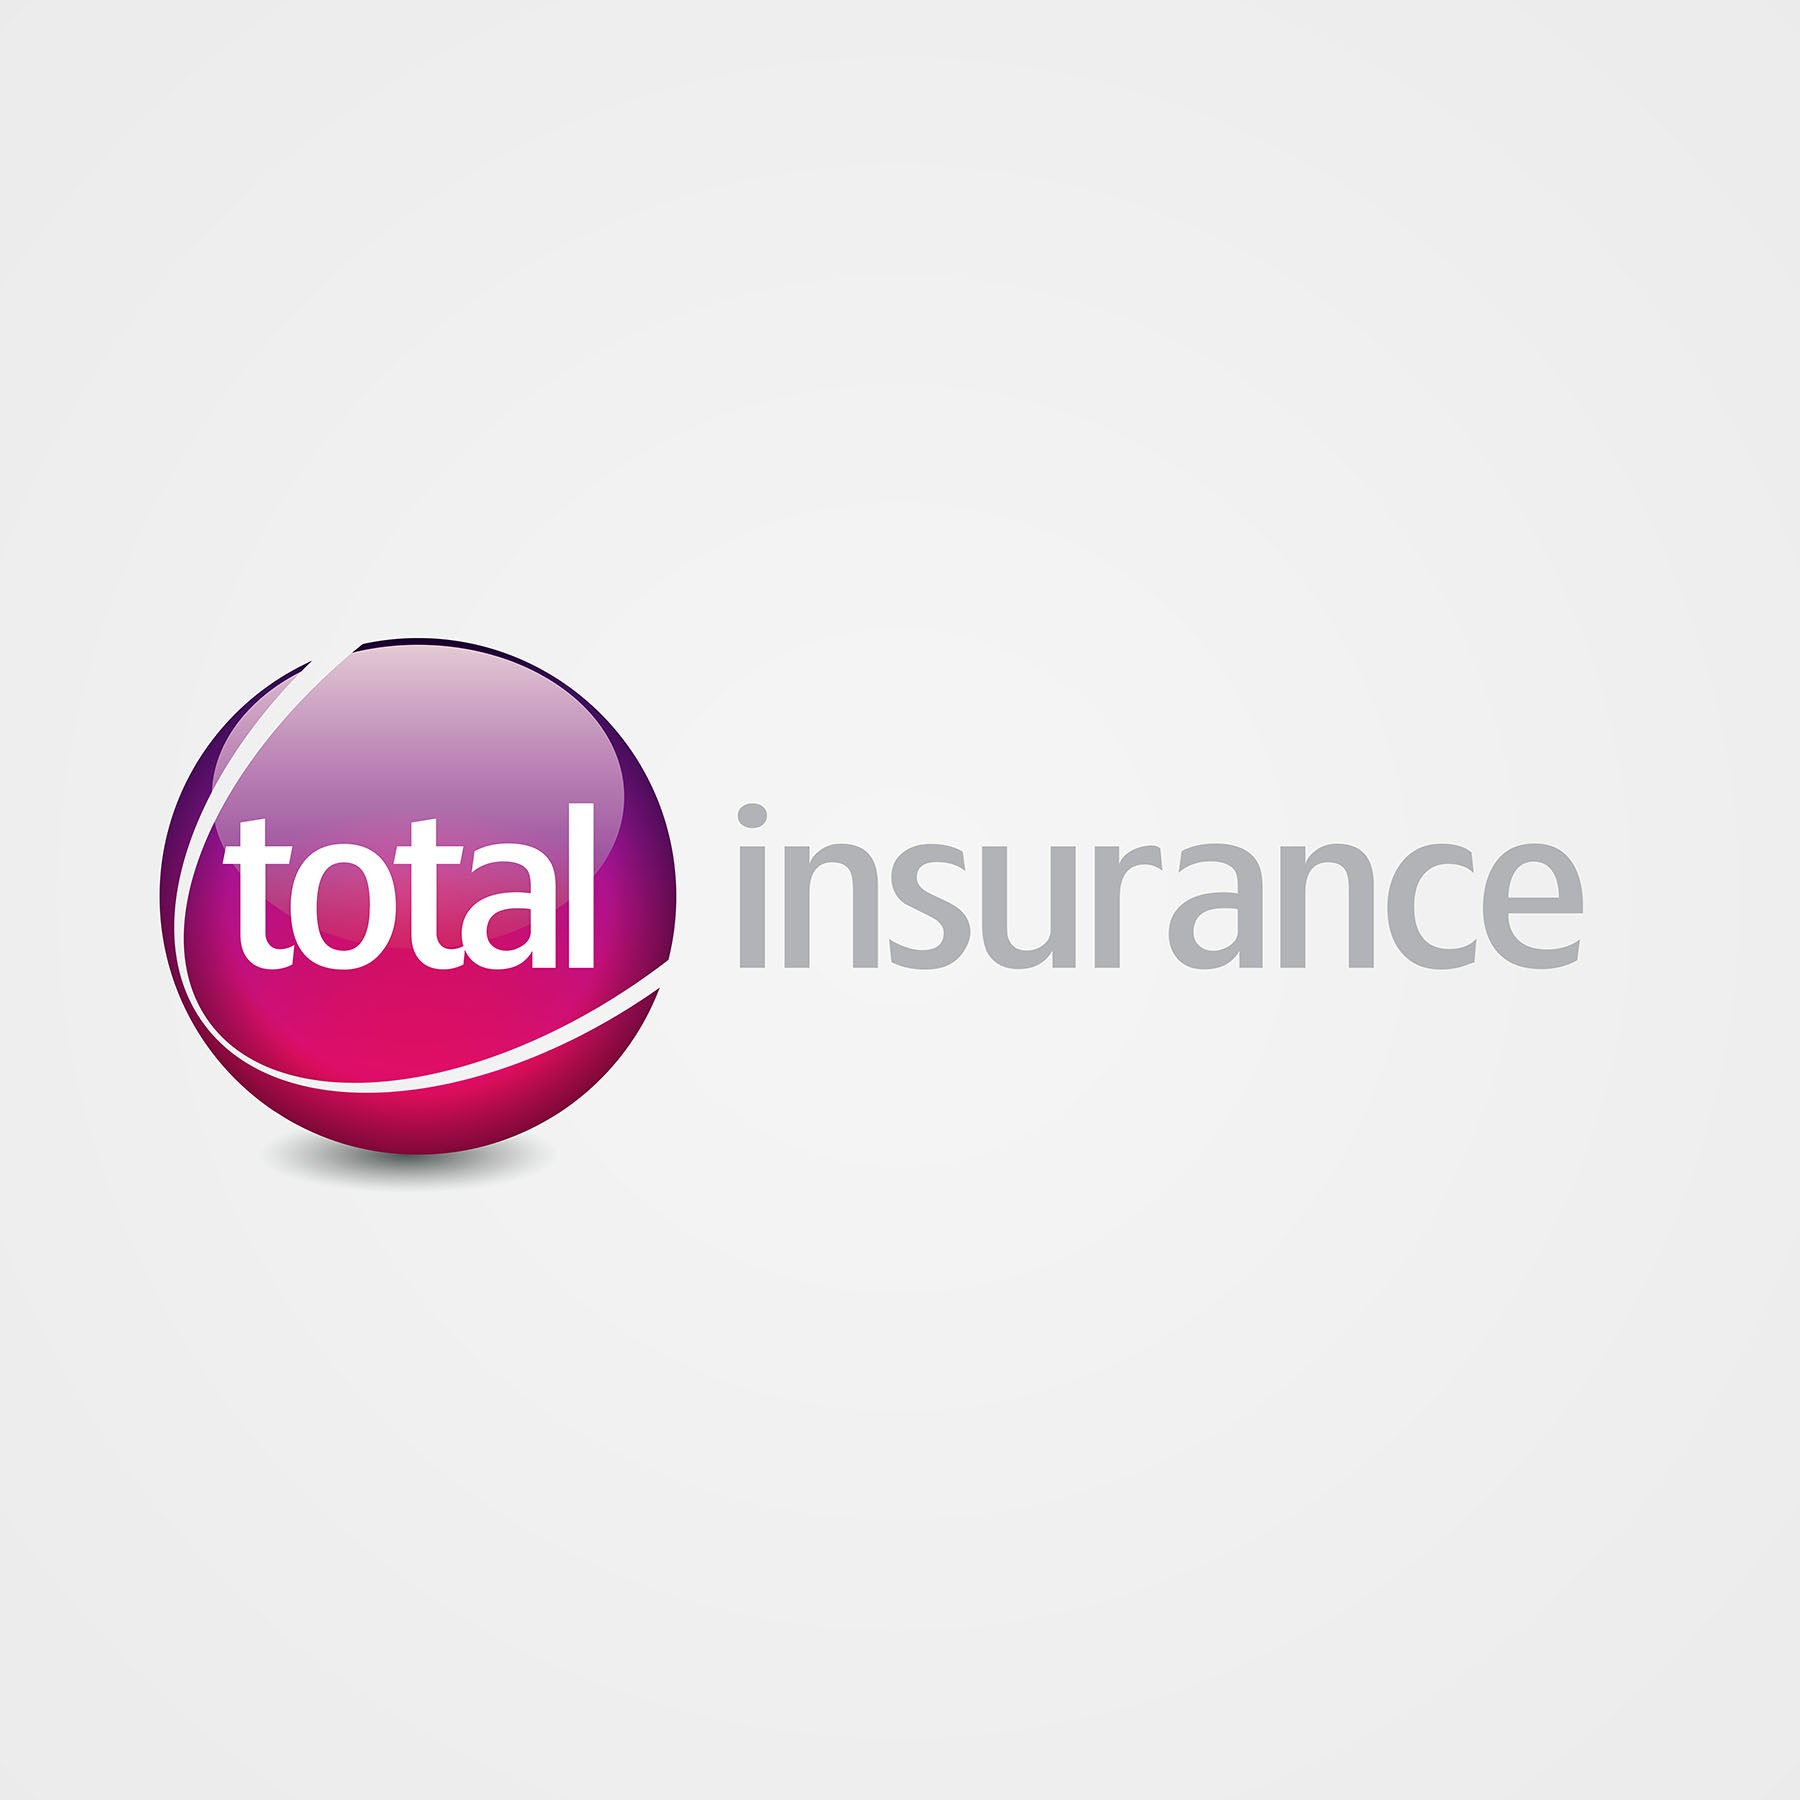 Total Insurance Branding Logo